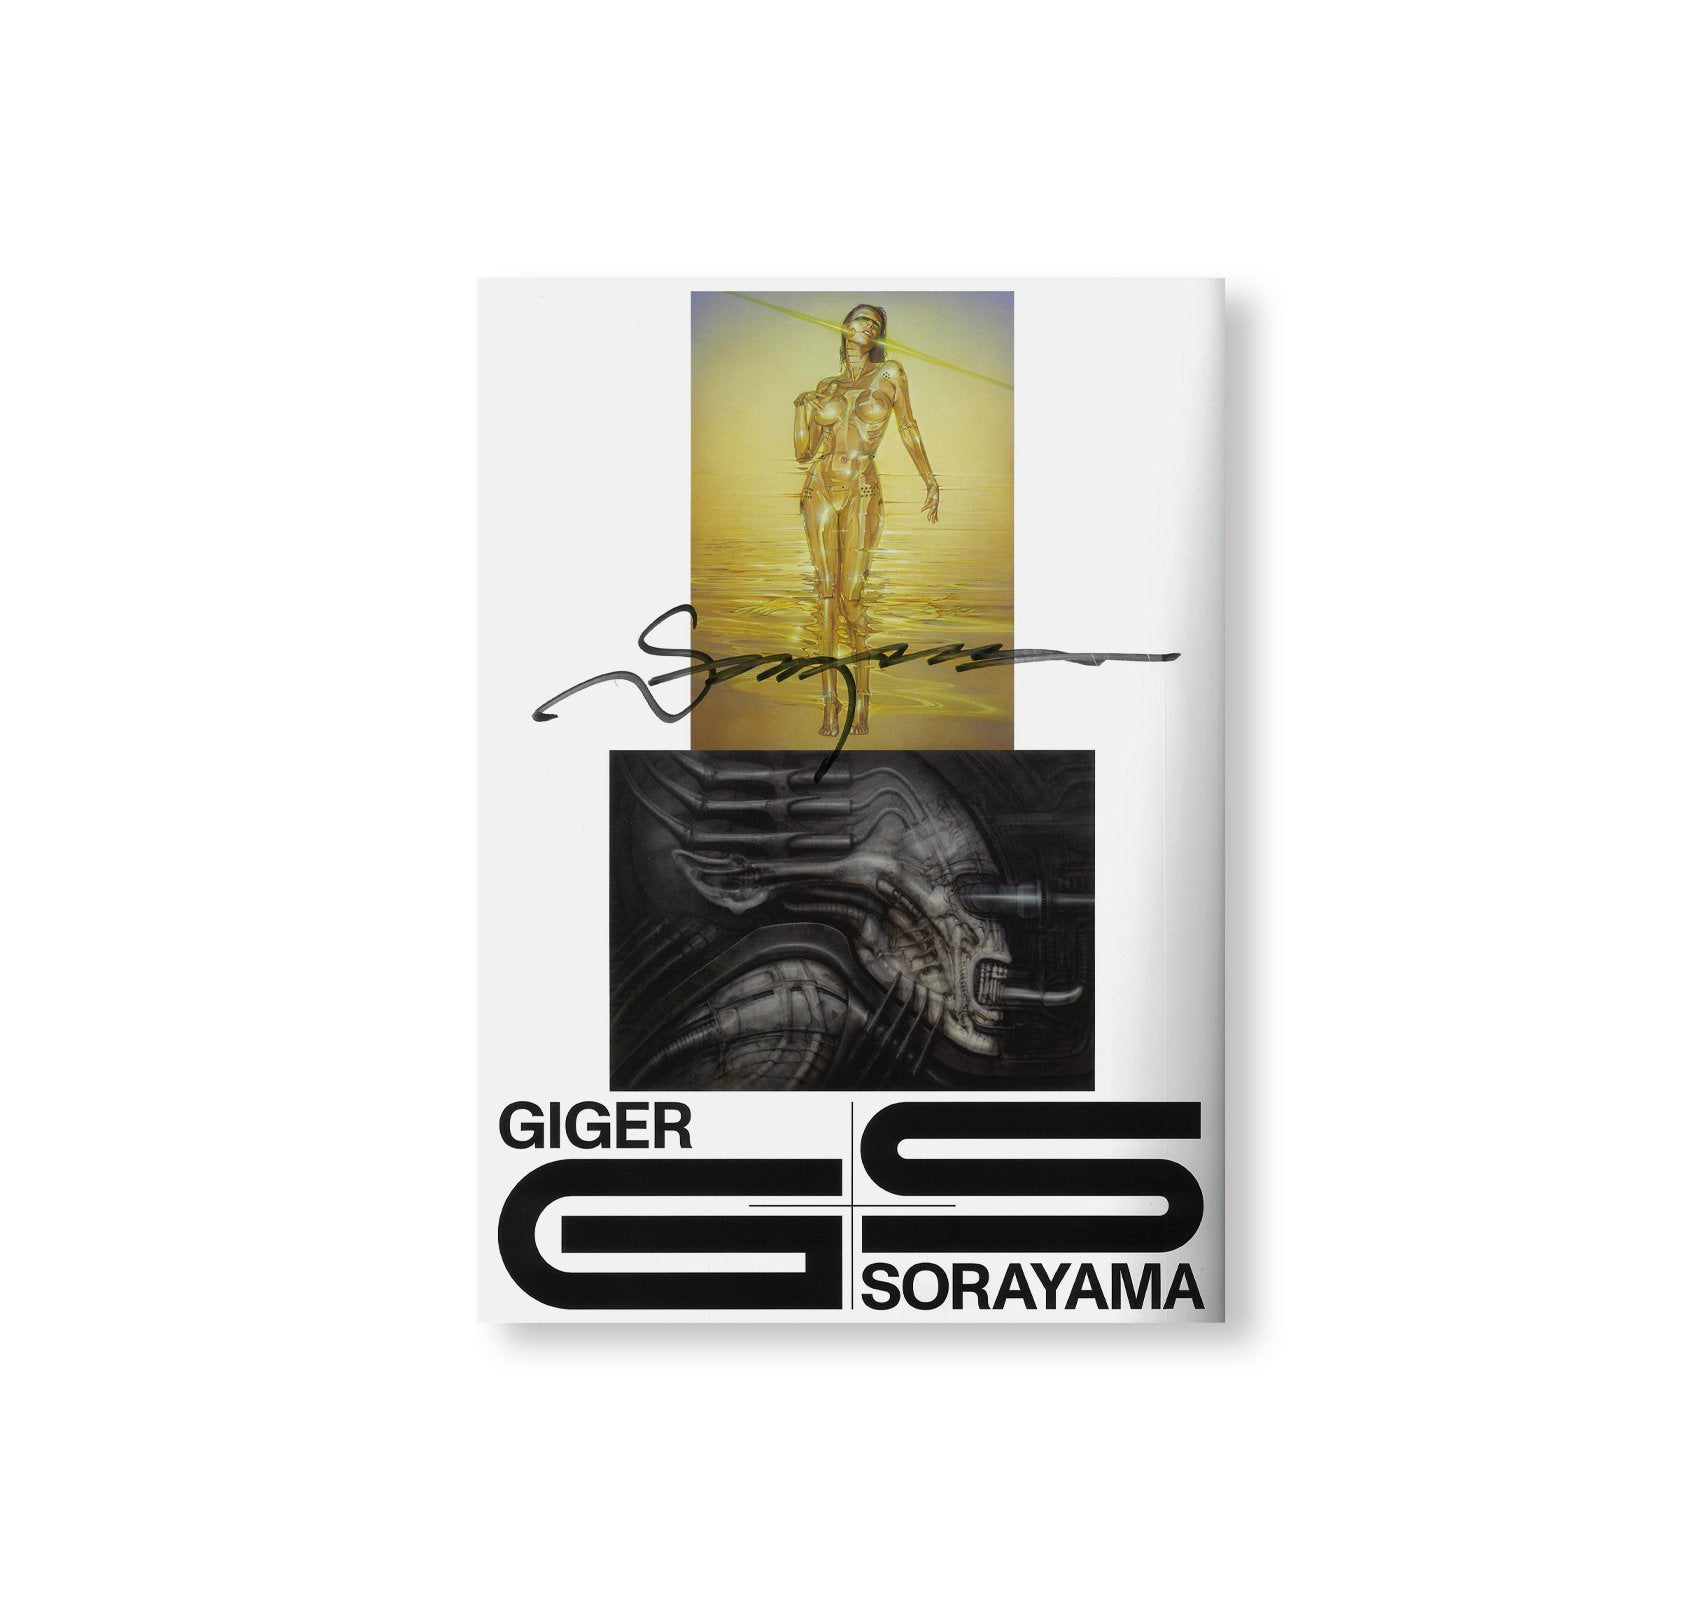 GIGER SORAYAMA by H. R. Giger, Hajime Sorayama [SIGNED]